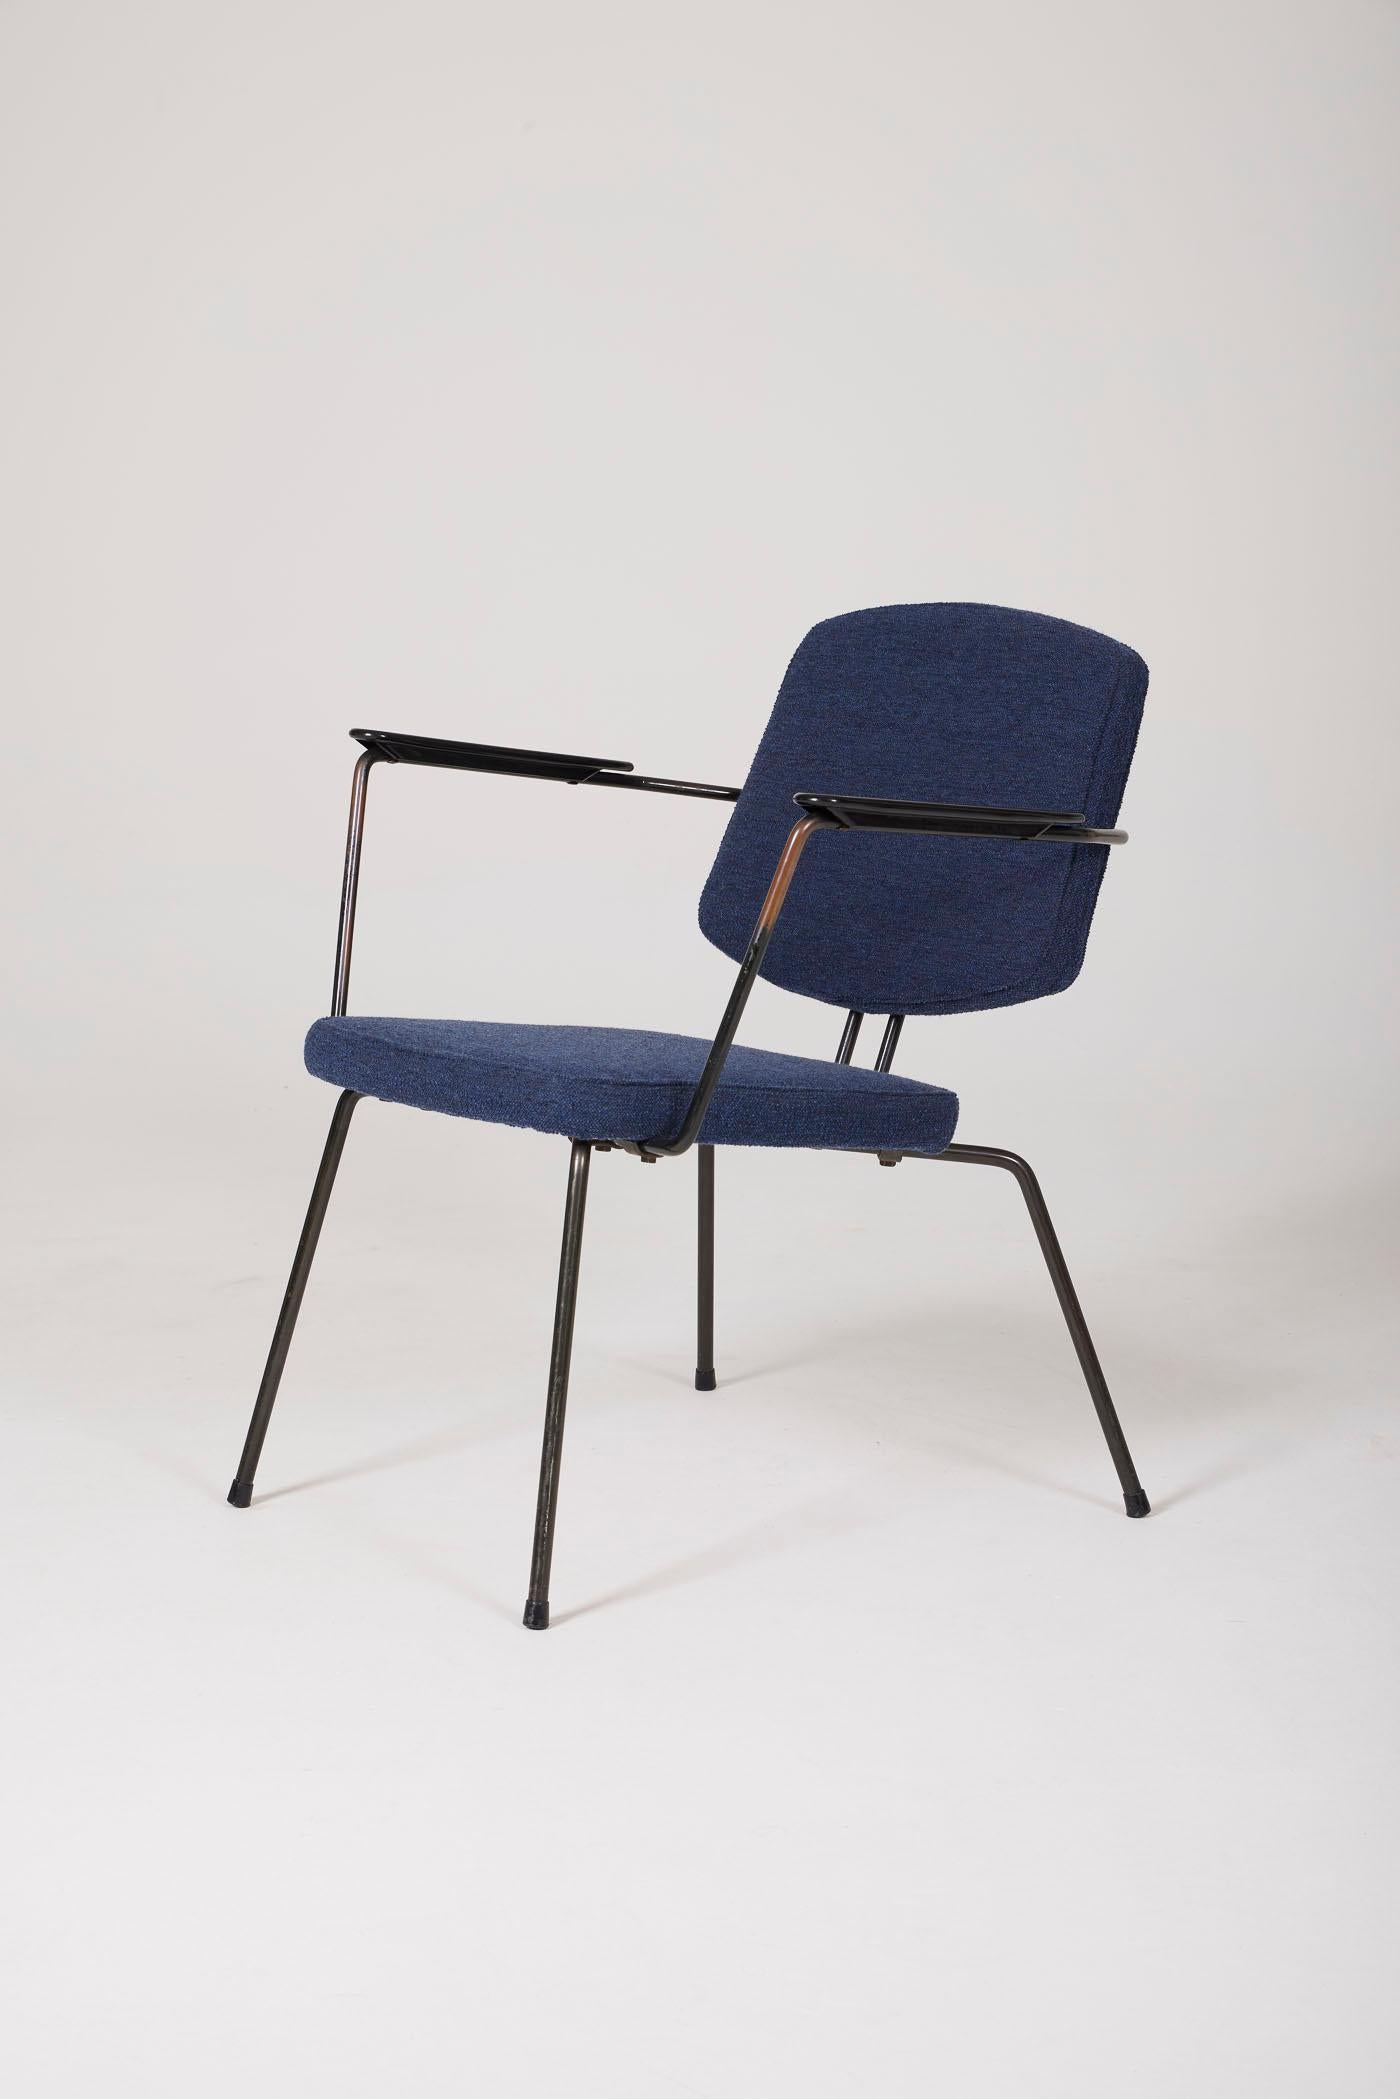  Fauteuil du designer néerlandais Rudolf Wolf pour Elsrijk, années 1950. Ce fauteuil a été retapissé en tissu de laine bleu. Les accoudoirs sont en bakélite. La structure tubulaire est en métal laqué noir. Deux fauteuils disponibles. En parfait